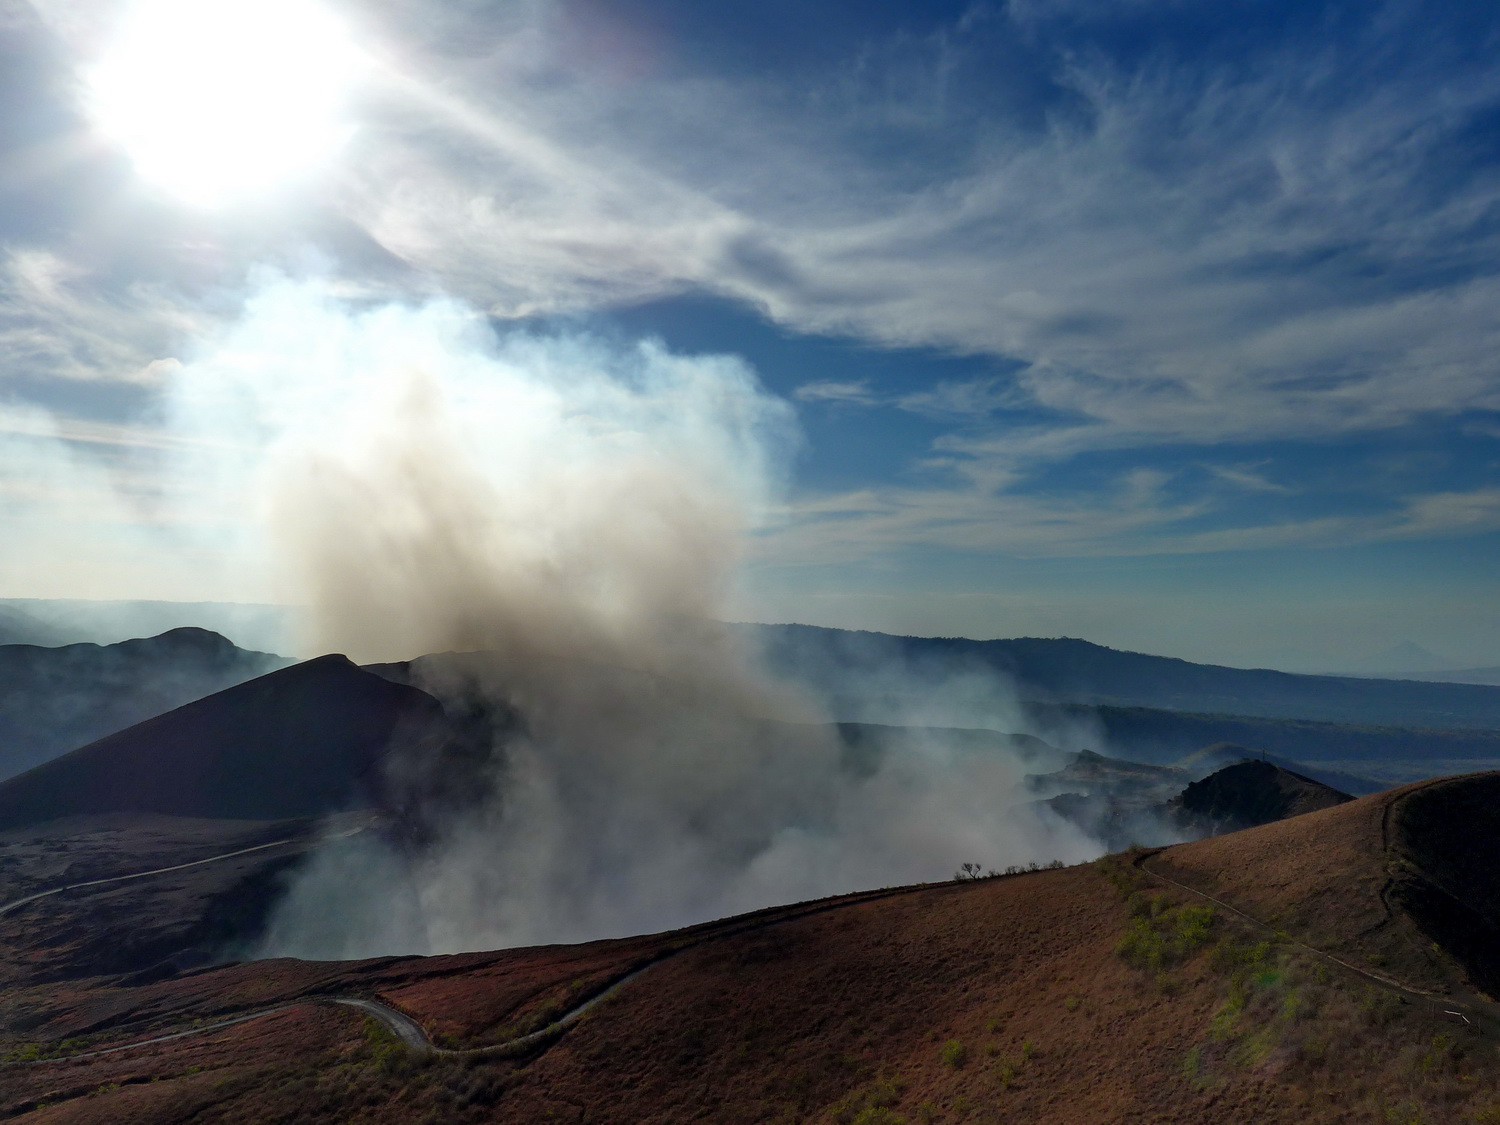 Fuming crater Santiago of Volcan Masaya